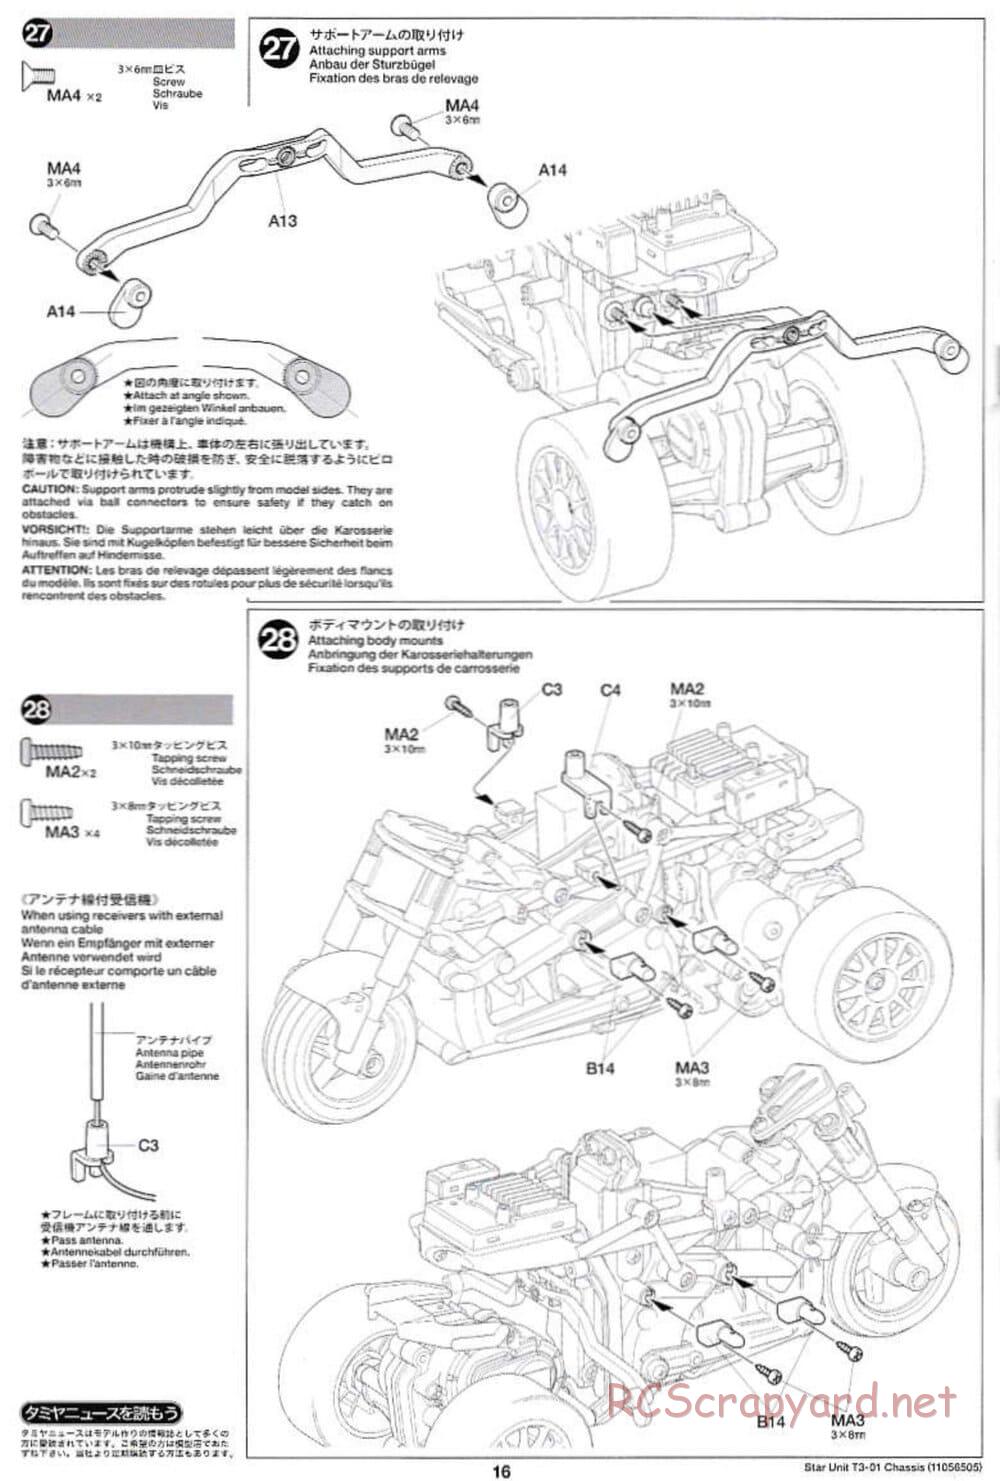 Tamiya - T3-01 Chassis - Manual - Page 16